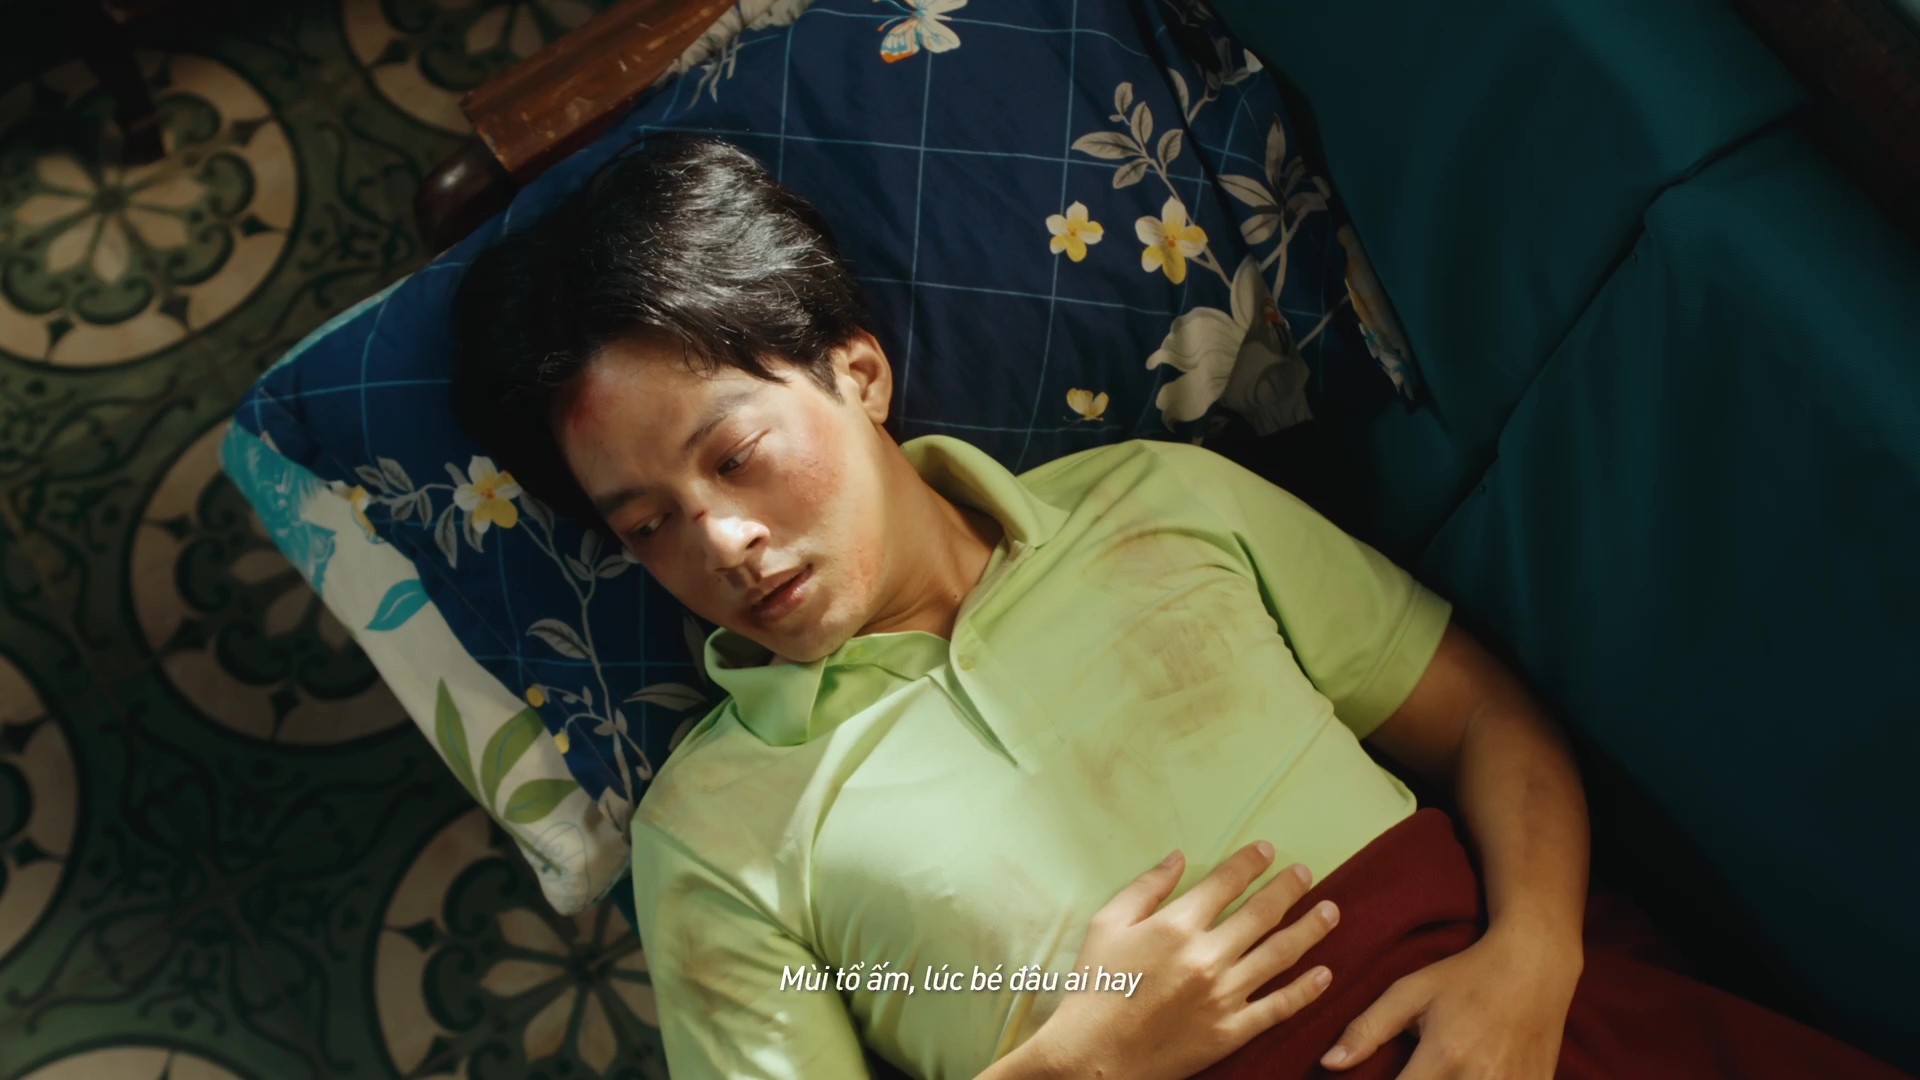 Quân A.P & Hứa Kim Tuyền đưa mùi tổ ấm vào MV mới ra mắt - Ảnh 3.